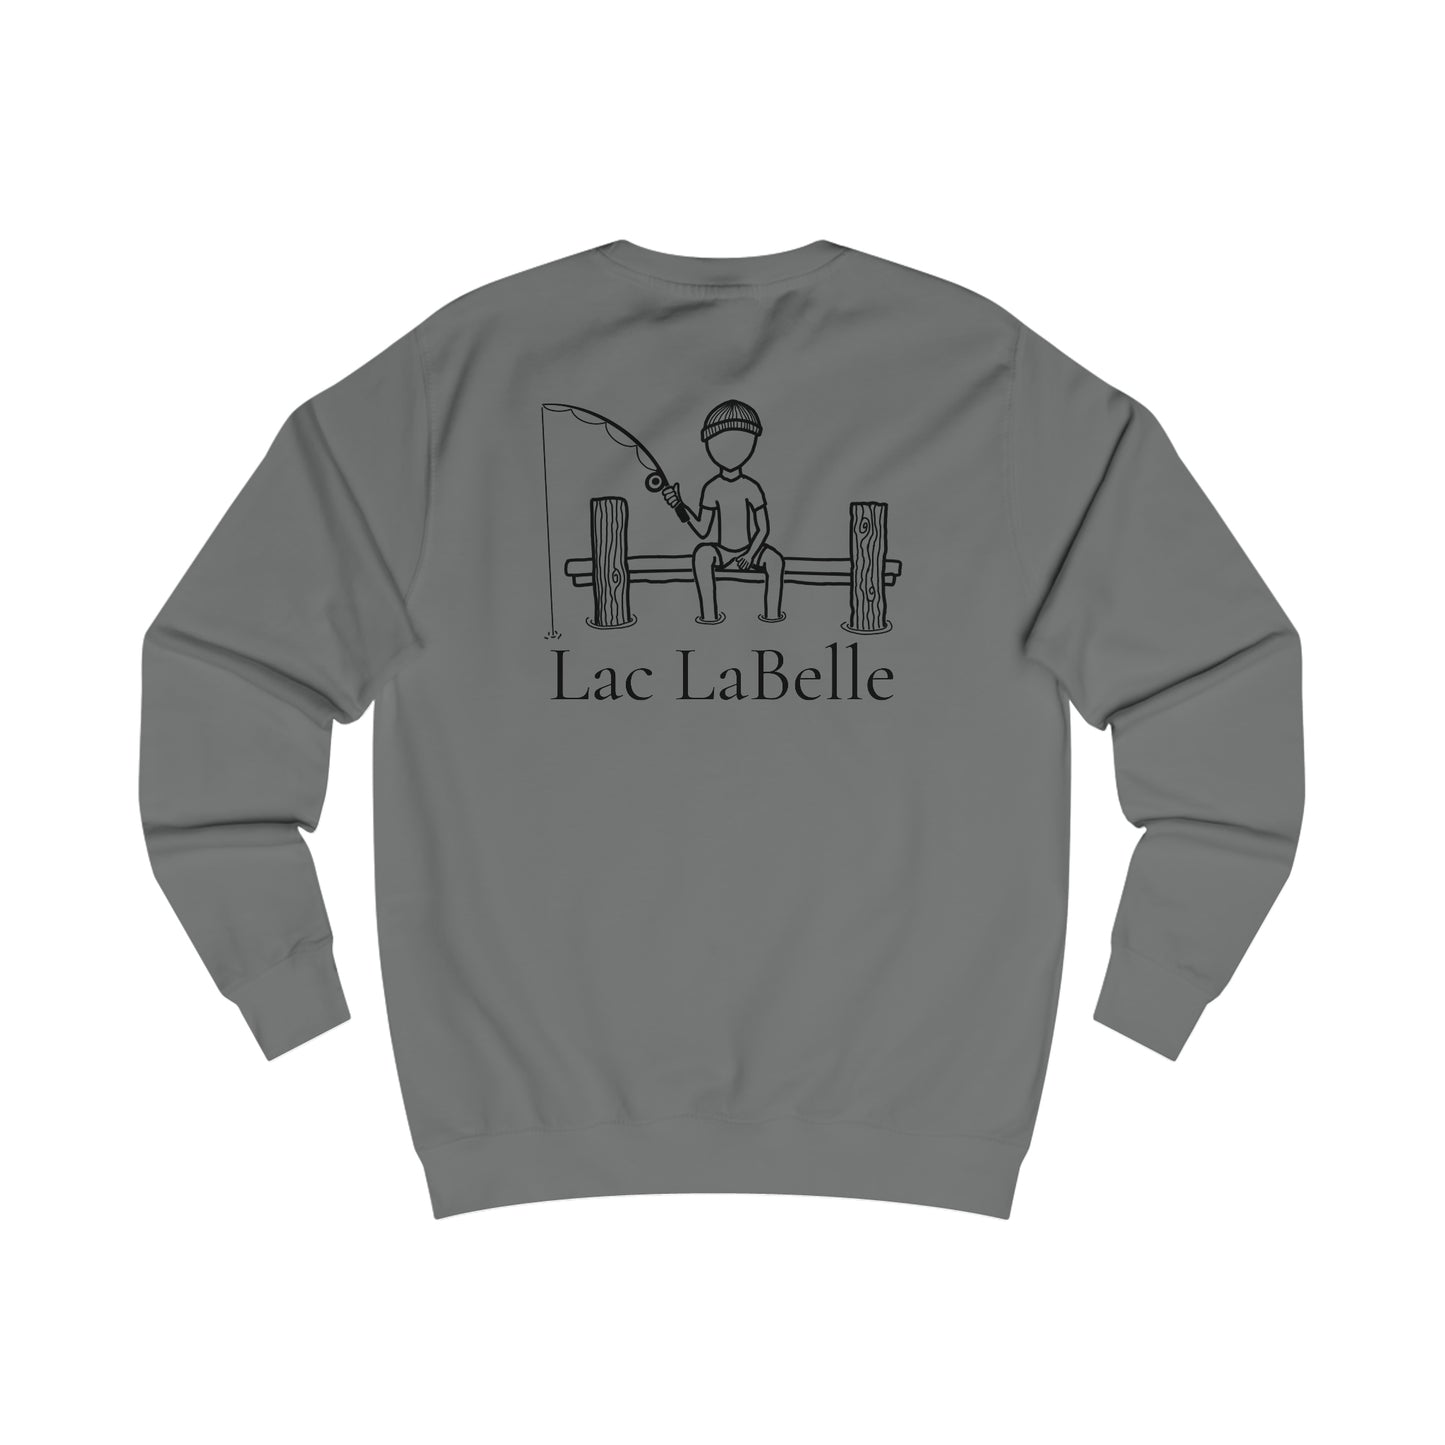 Fishing Off Dock - Lac LaBelle Men's Crewneck